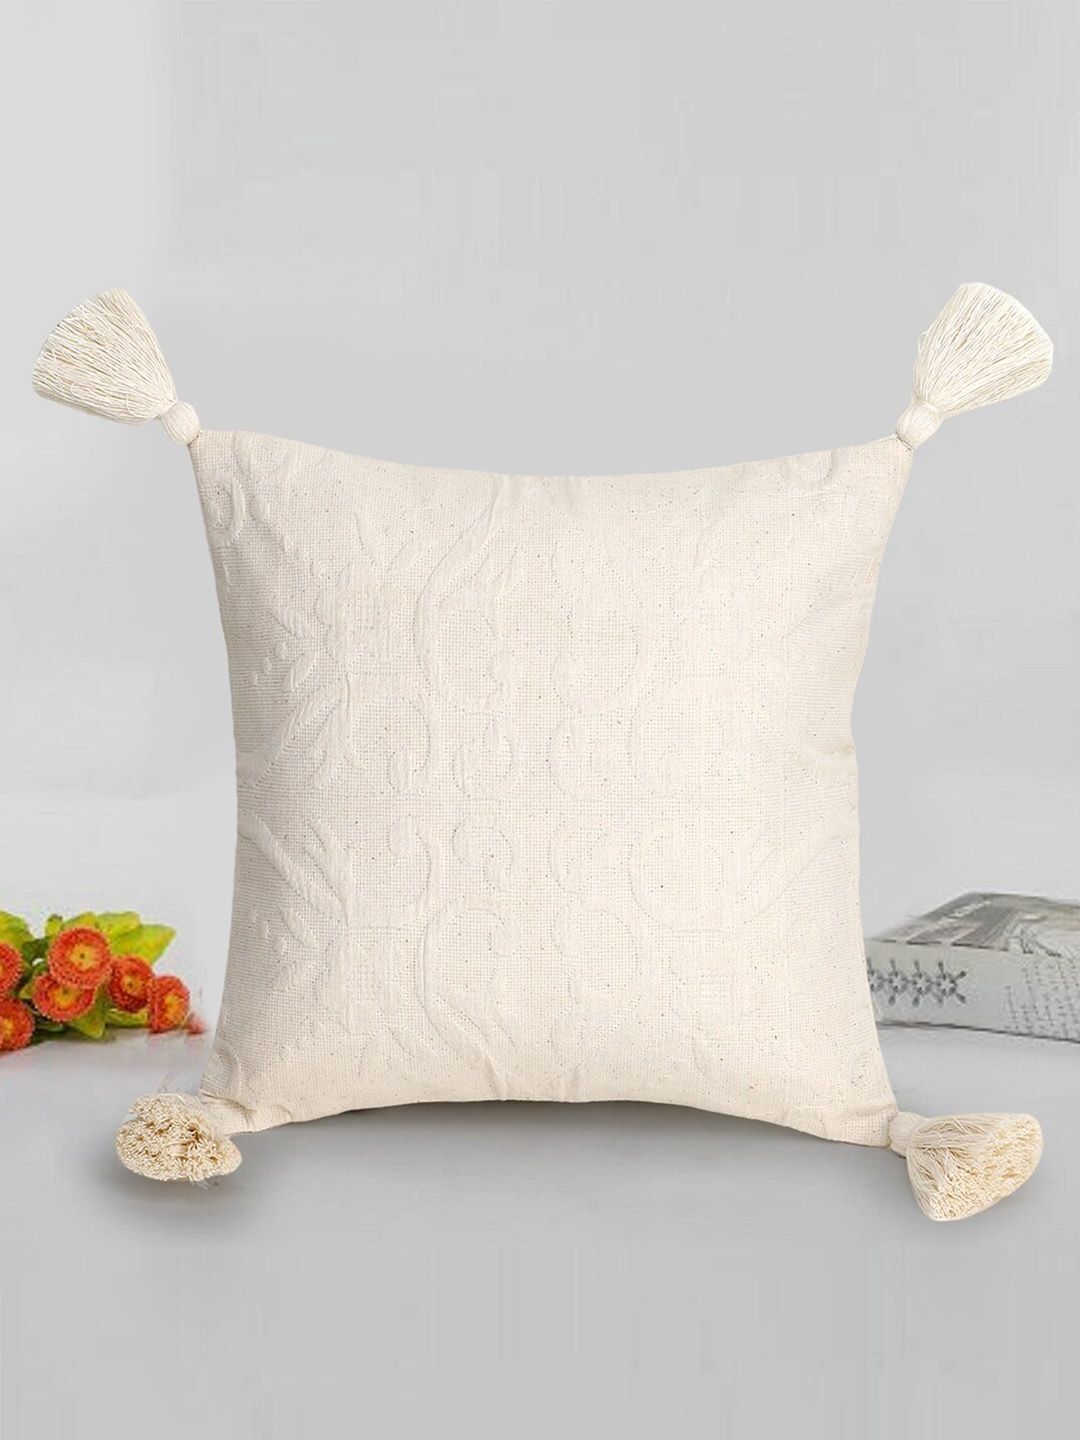 Mezposh Off White Square Cushion Covers Price in India